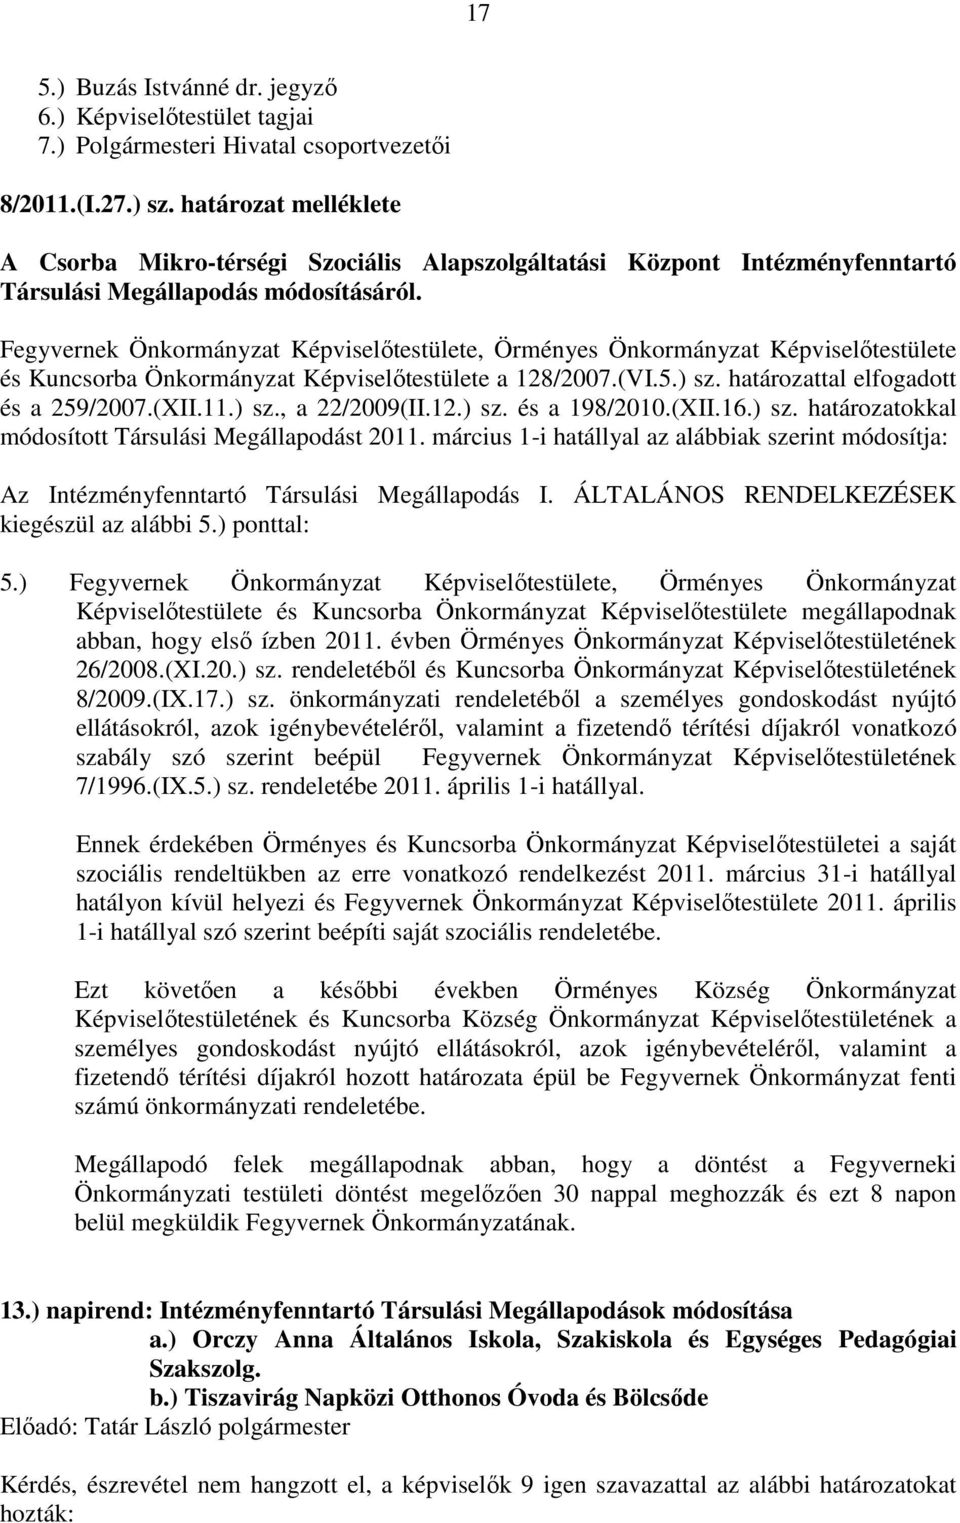 Fegyvernek Önkormányzat Képviselőtestülete, Örményes Önkormányzat Képviselőtestülete és Kuncsorba Önkormányzat Képviselőtestülete a 128/2007.(VI.5.) sz. határozattal elfogadott és a 259/2007.(XII.11.